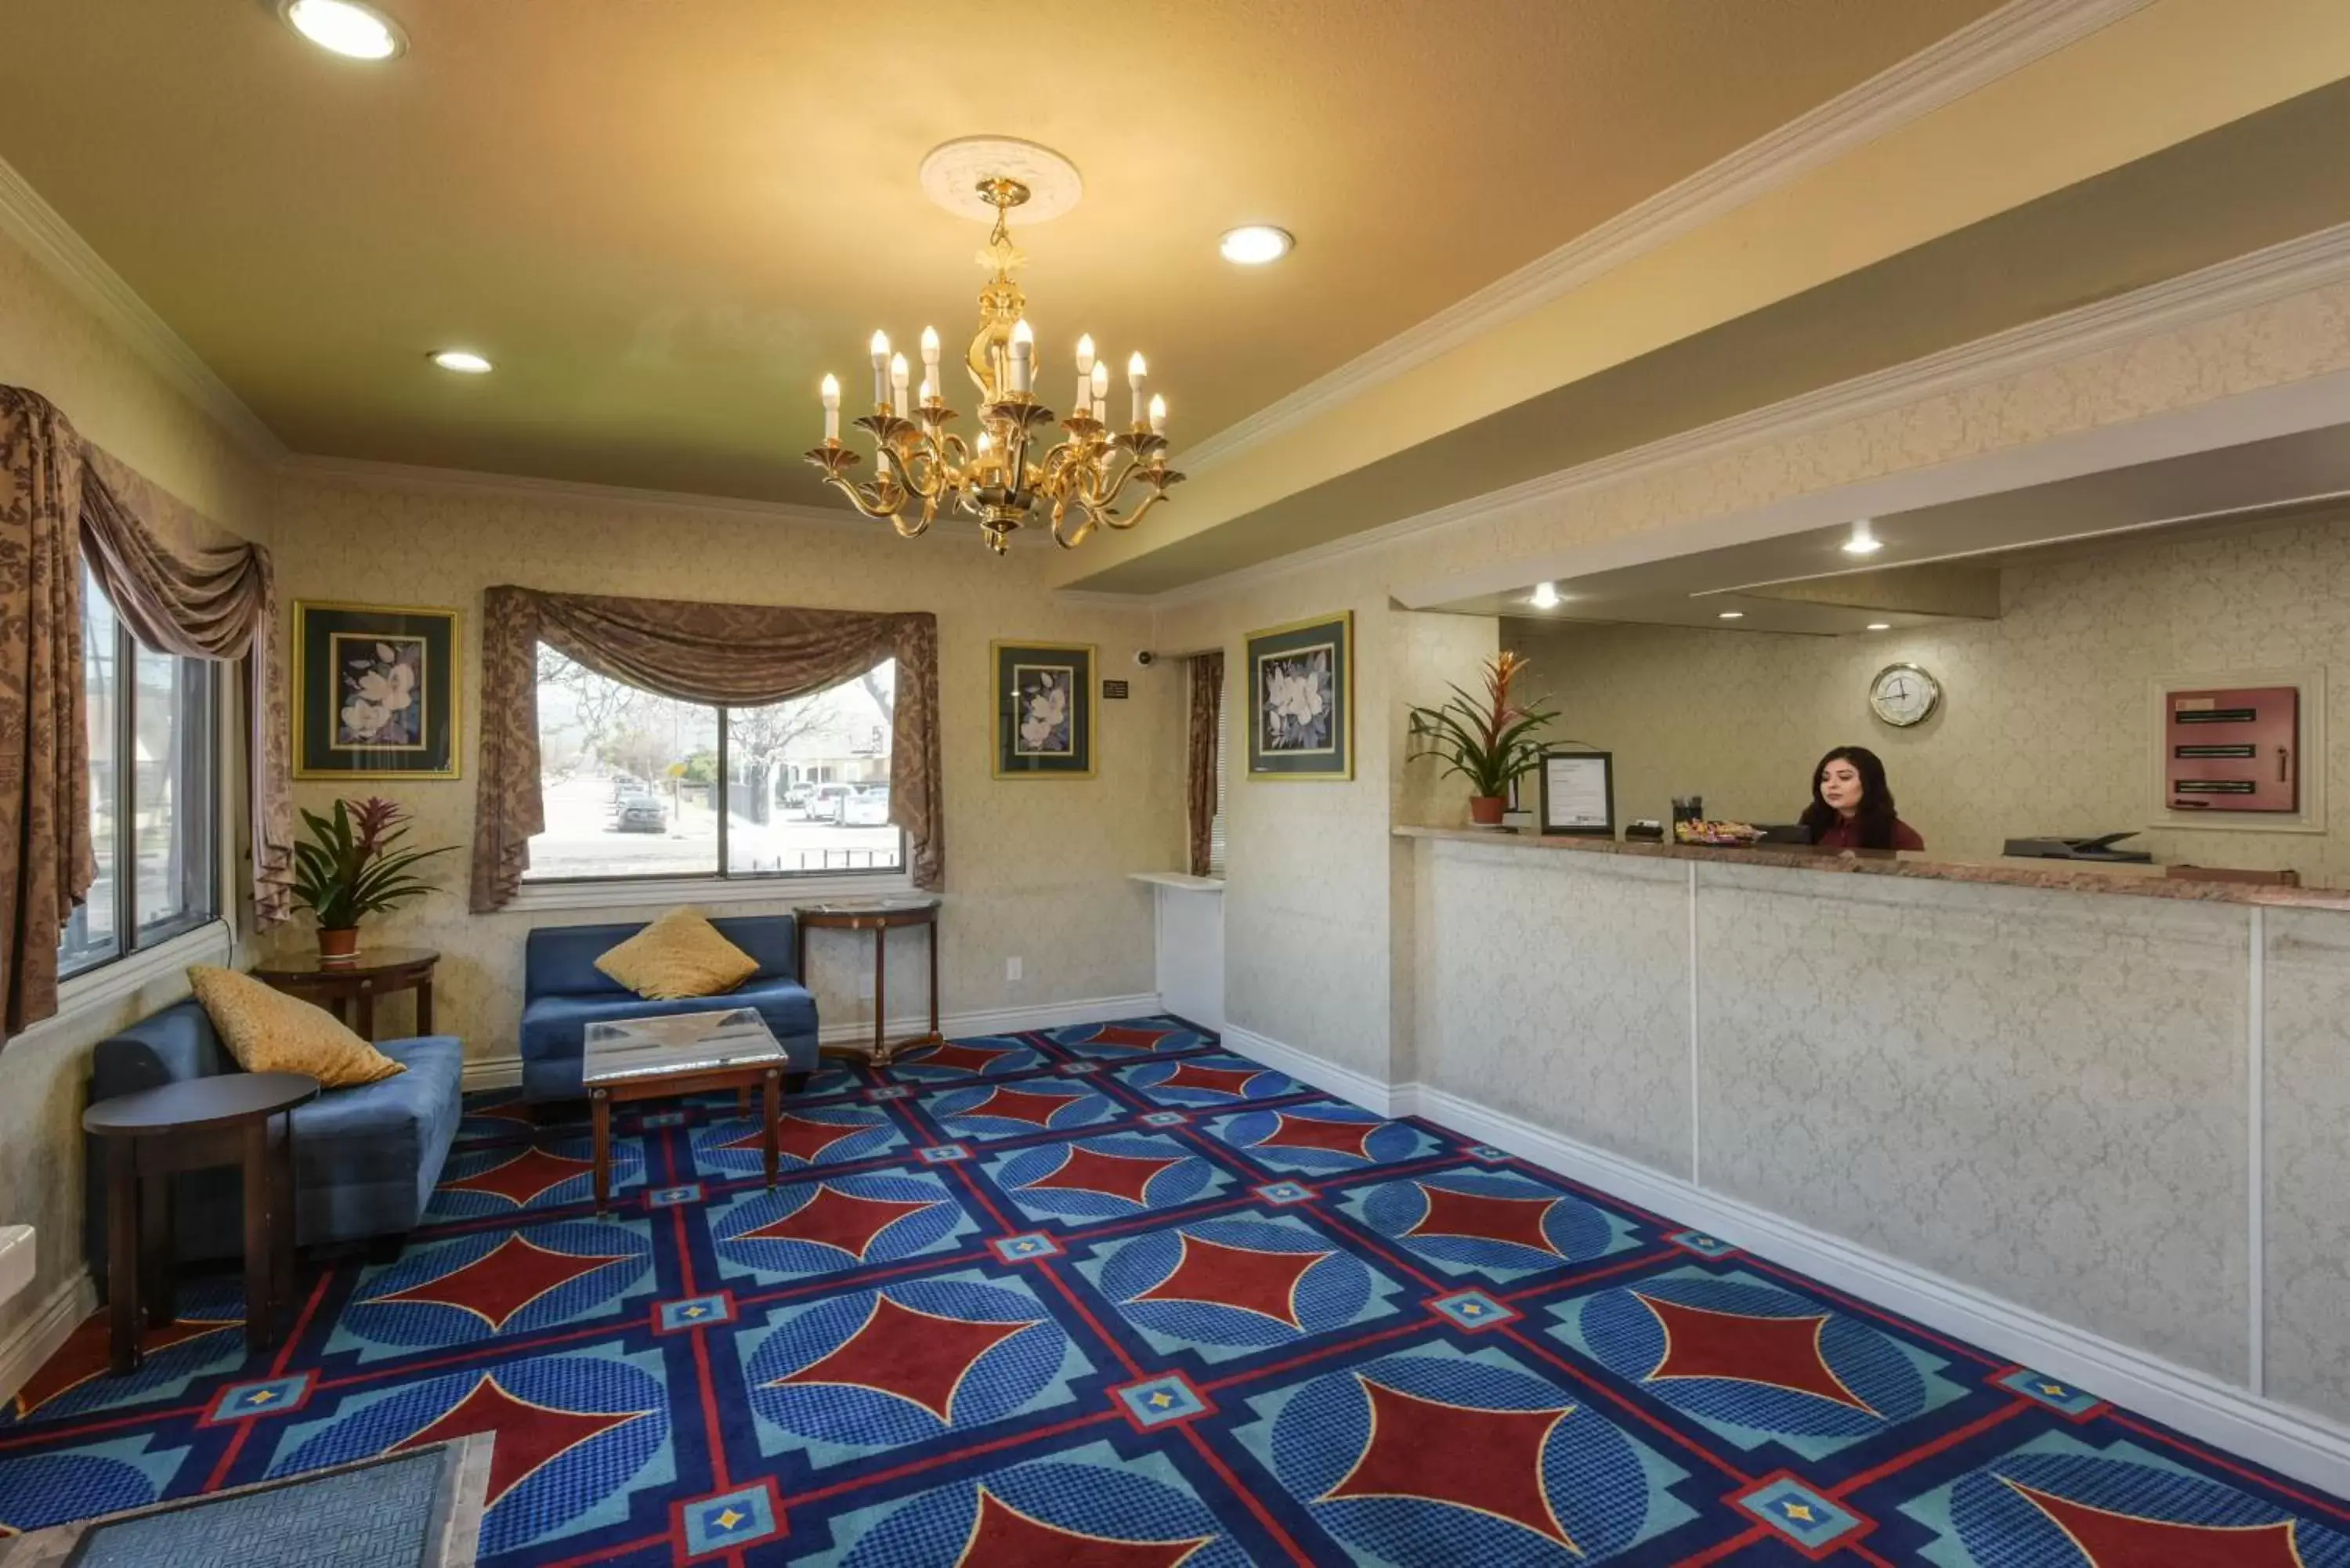 Lobby or reception, Lobby/Reception in Hotel Elan